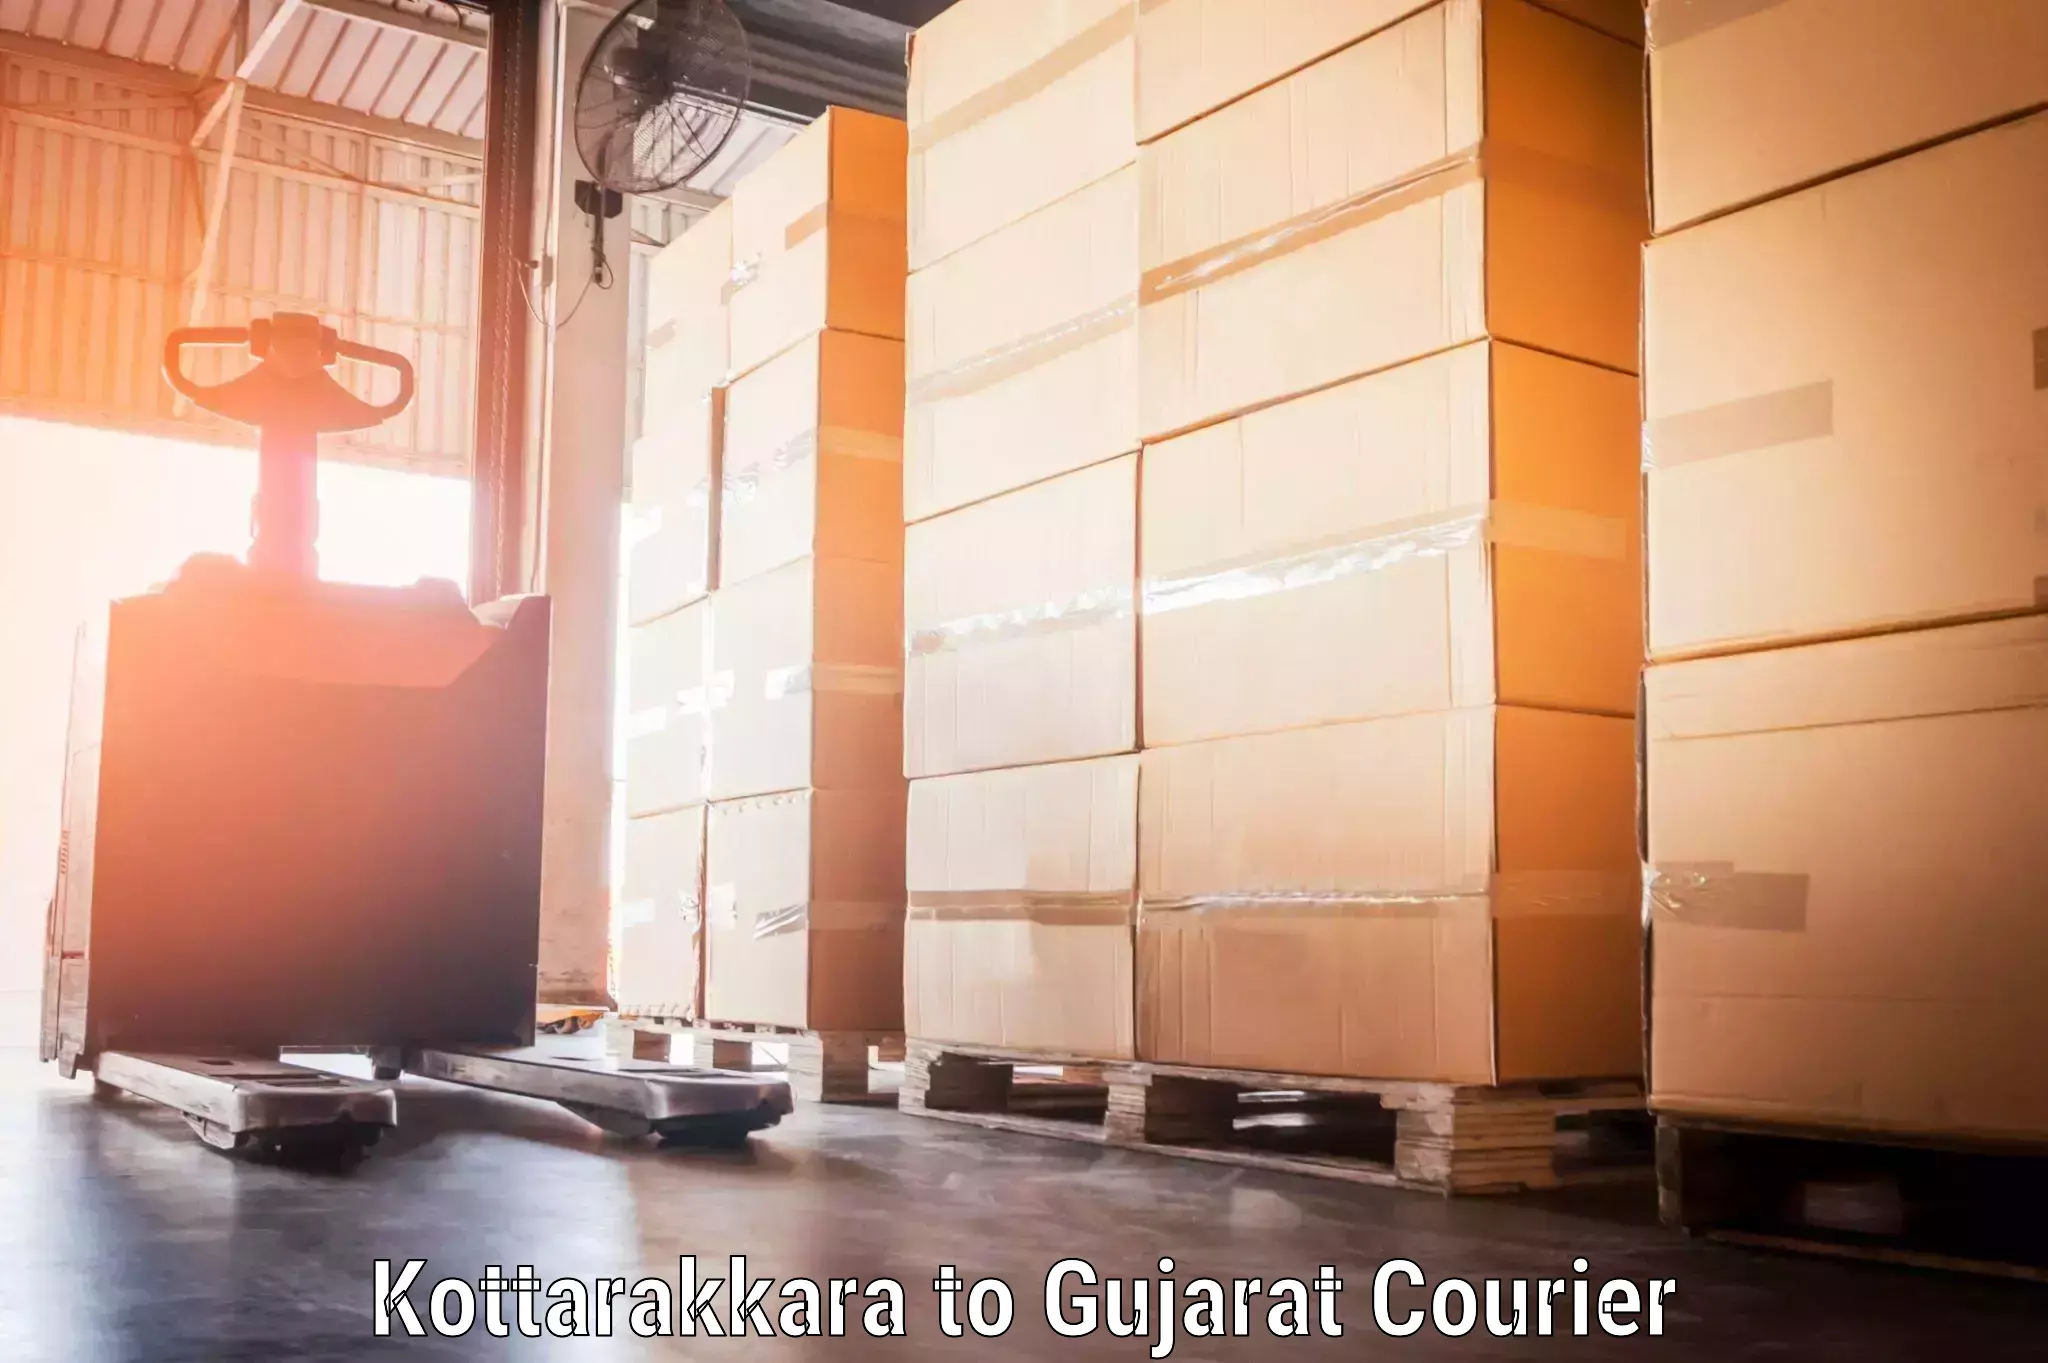 Luggage delivery network Kottarakkara to Ahwa